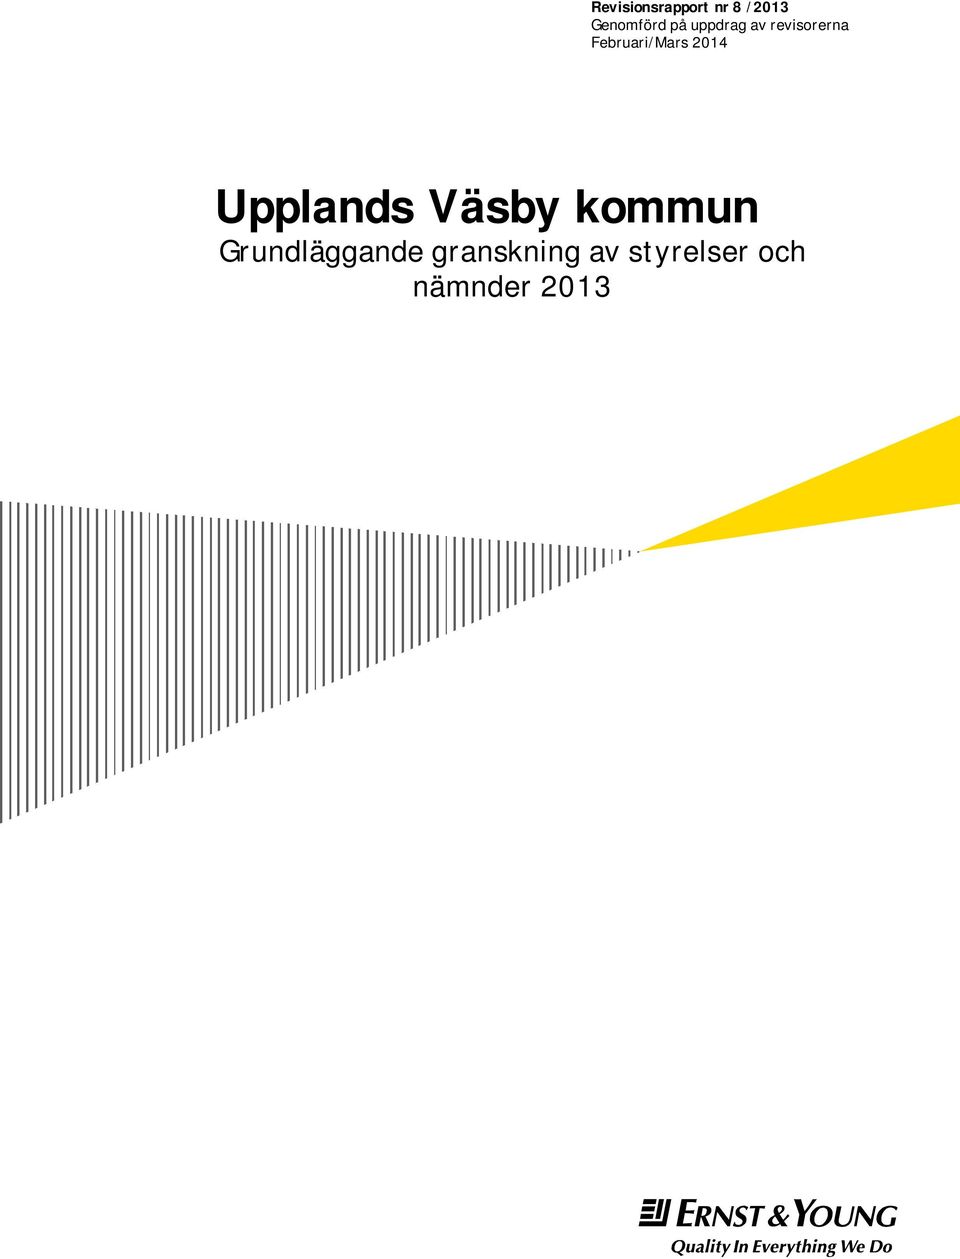 2014 Upplands Väsby kommun